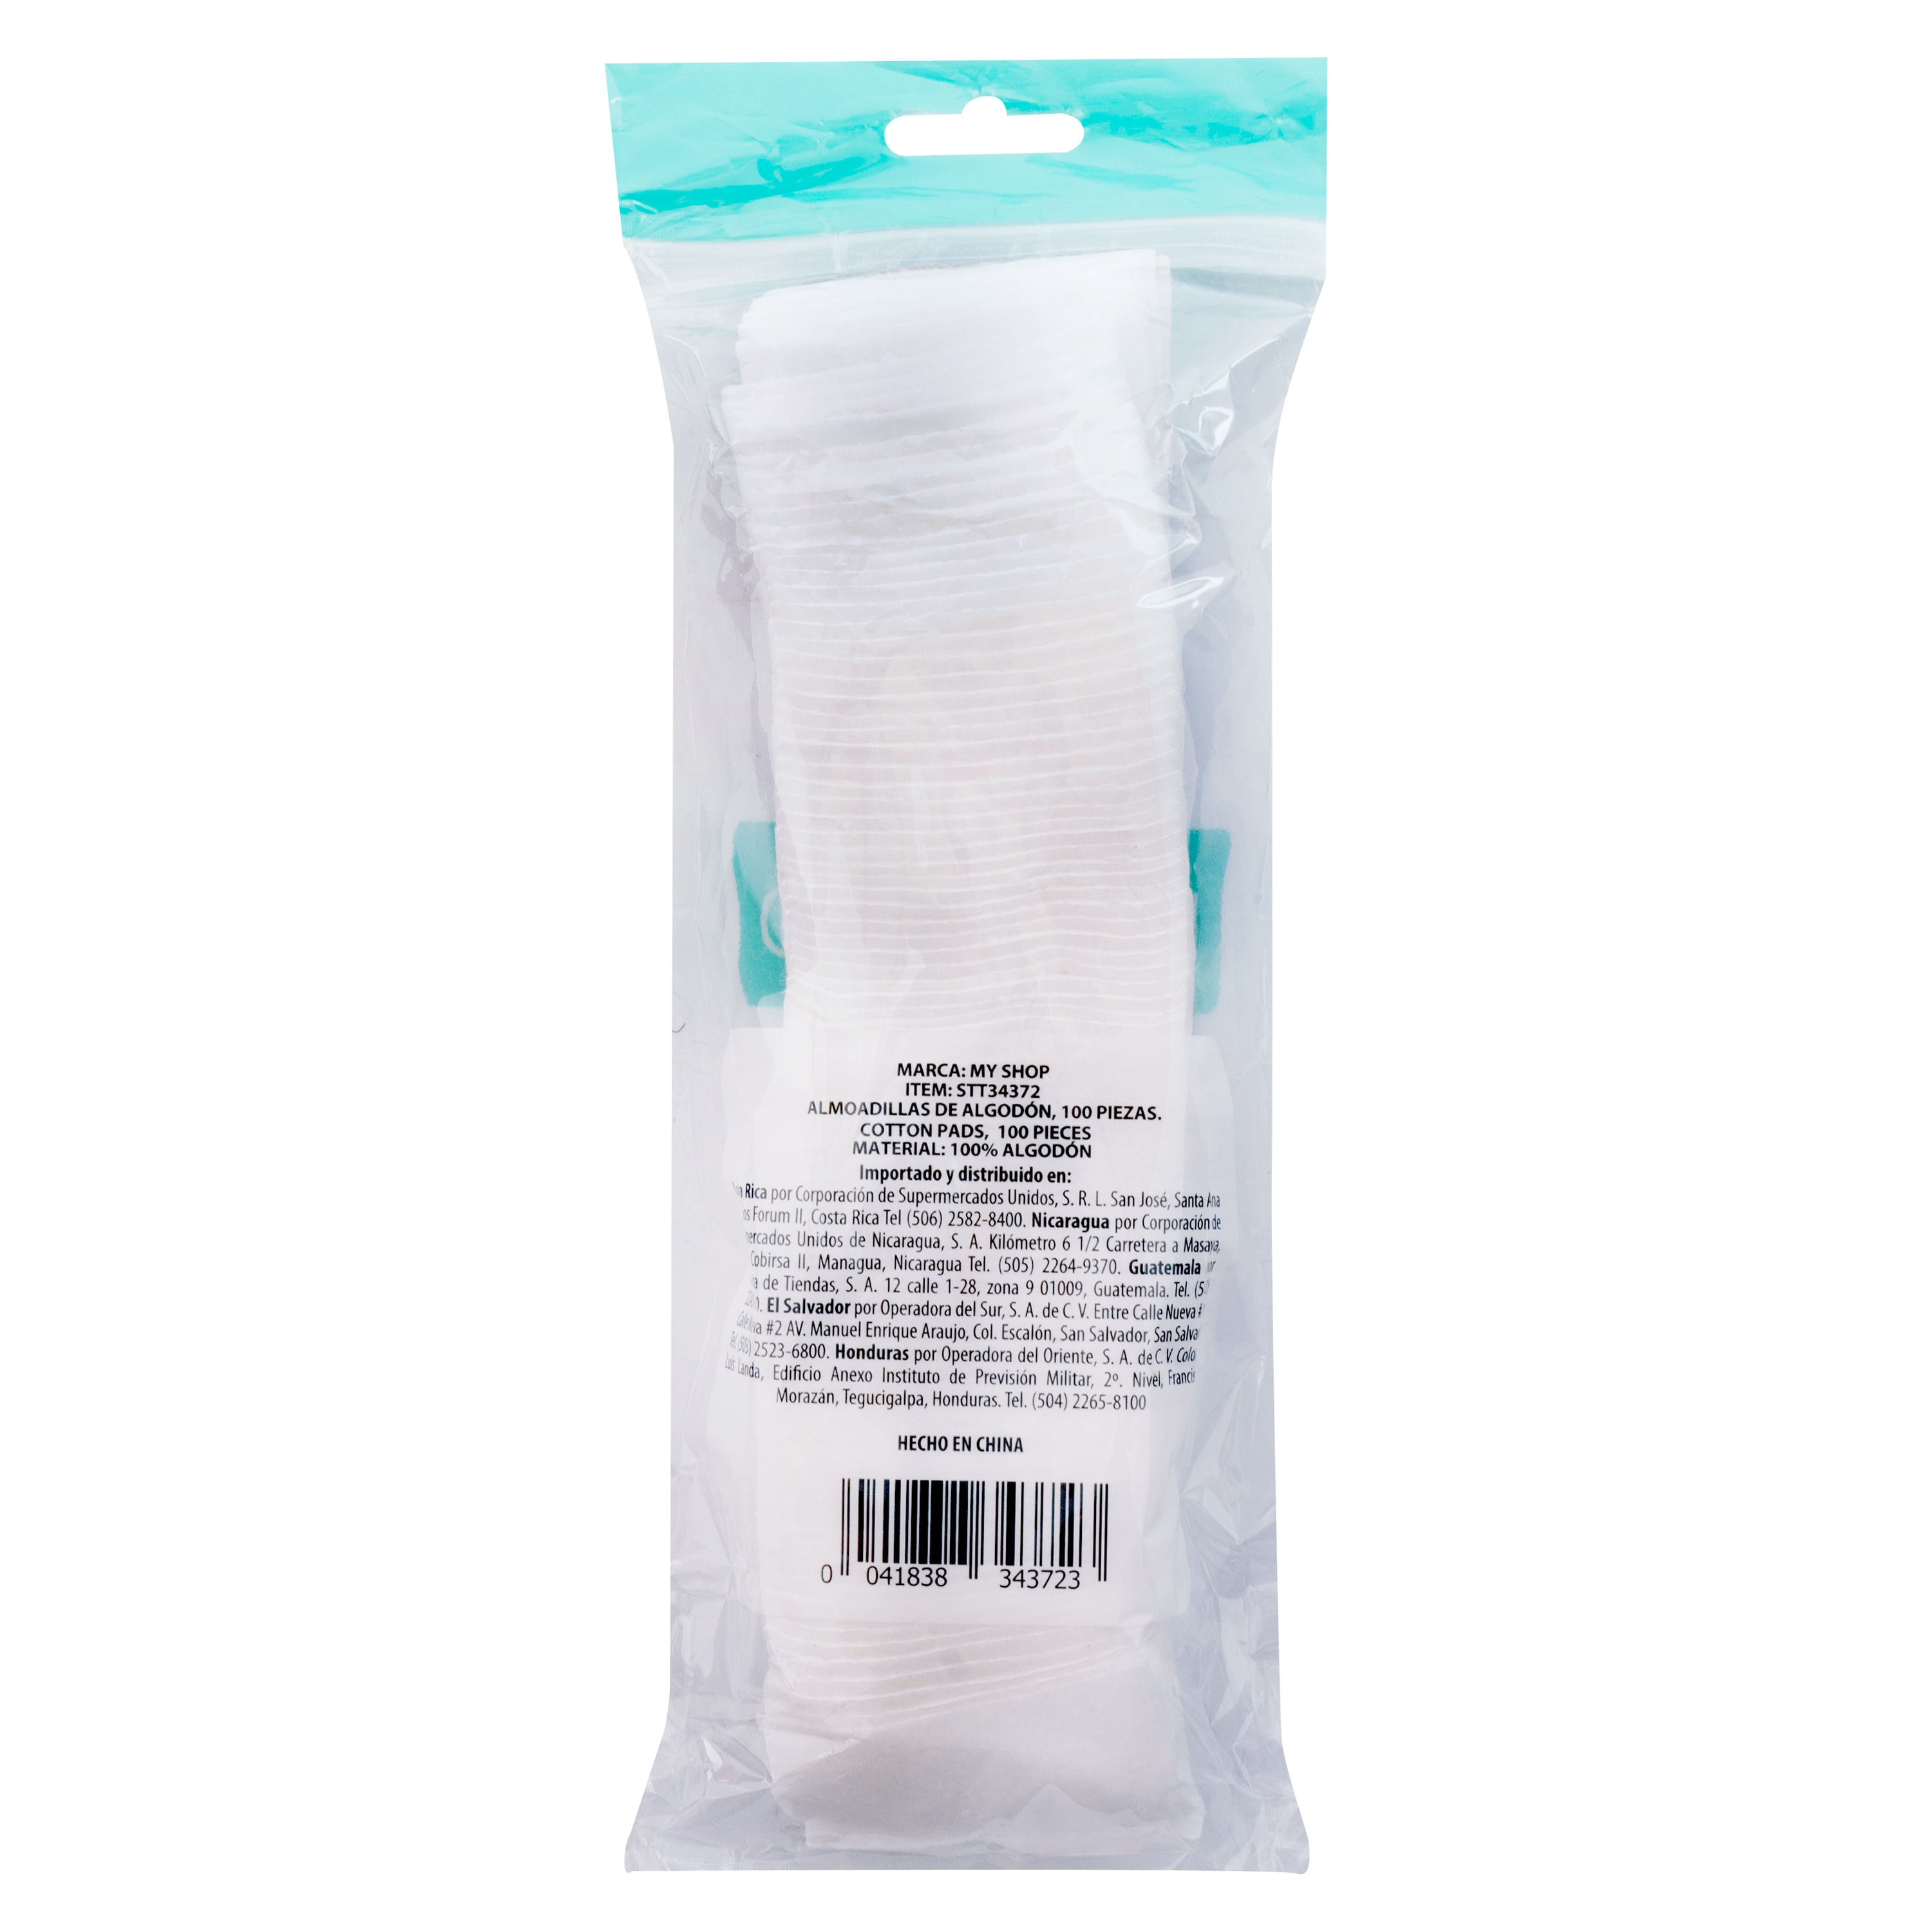 Laboratorios Dr. Collado - Nuestros pads desmaquillantes son 100% algodón  natural, dándole un delicado trato a tu piel y ayudando a retirar más  efectivamente contaminantes sin dejar residuos. #LabCollado